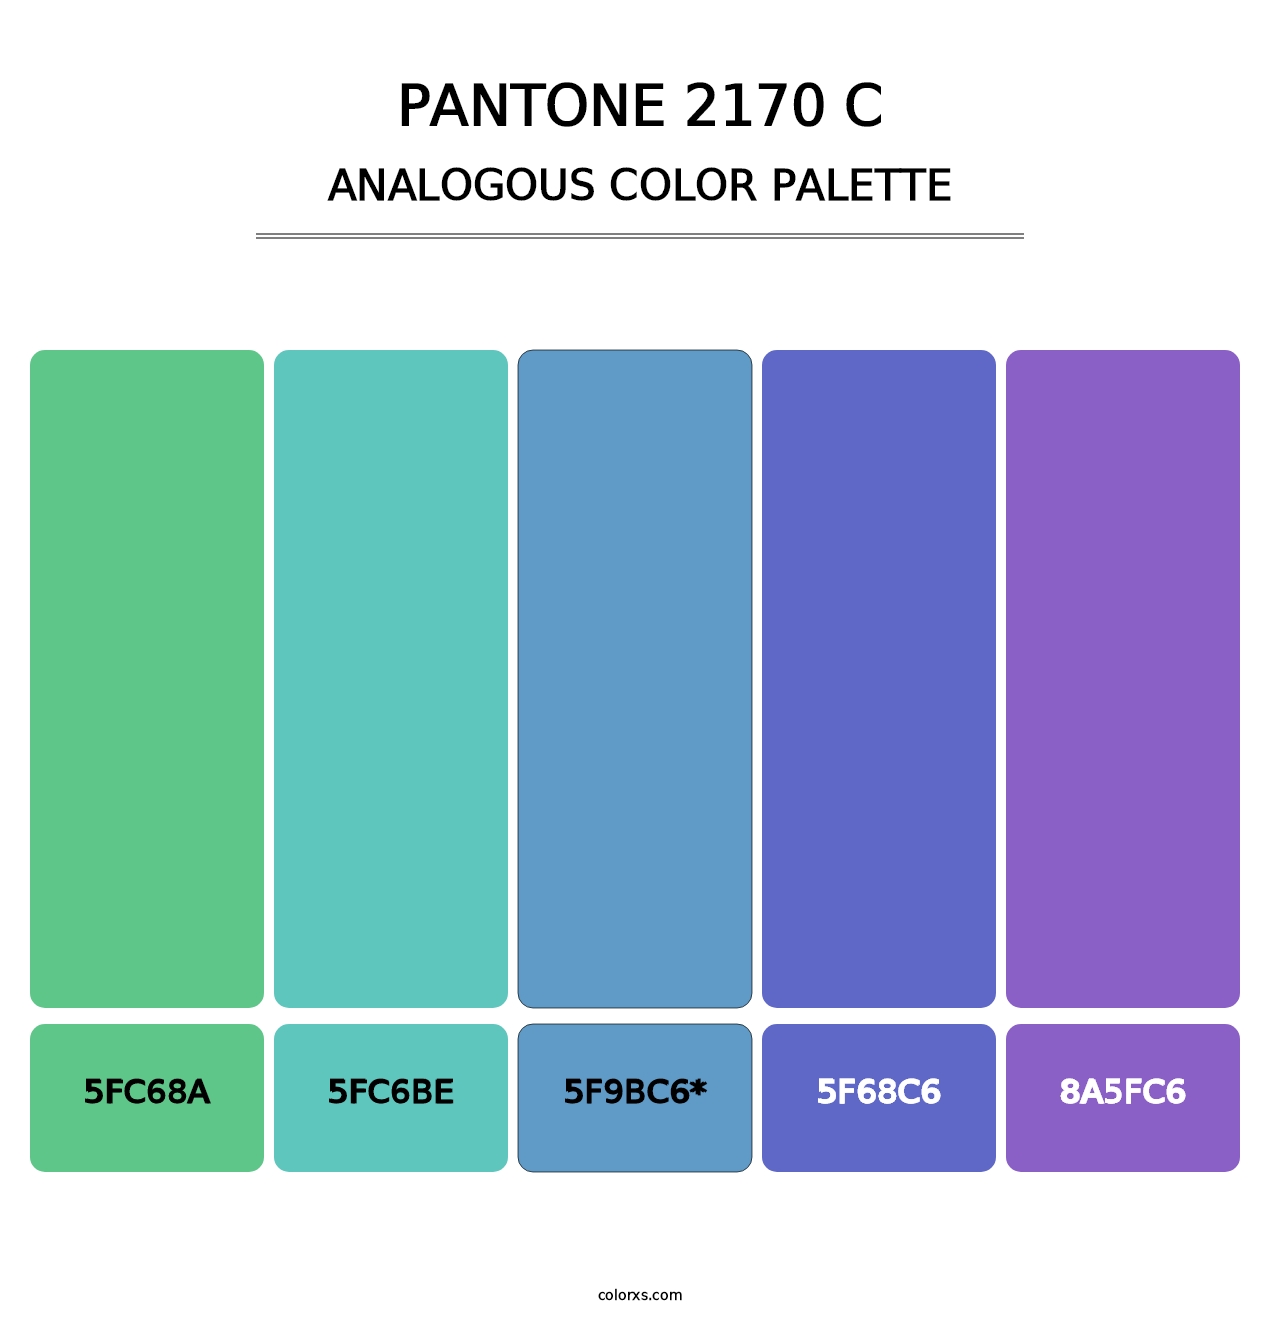 PANTONE 2170 C - Analogous Color Palette